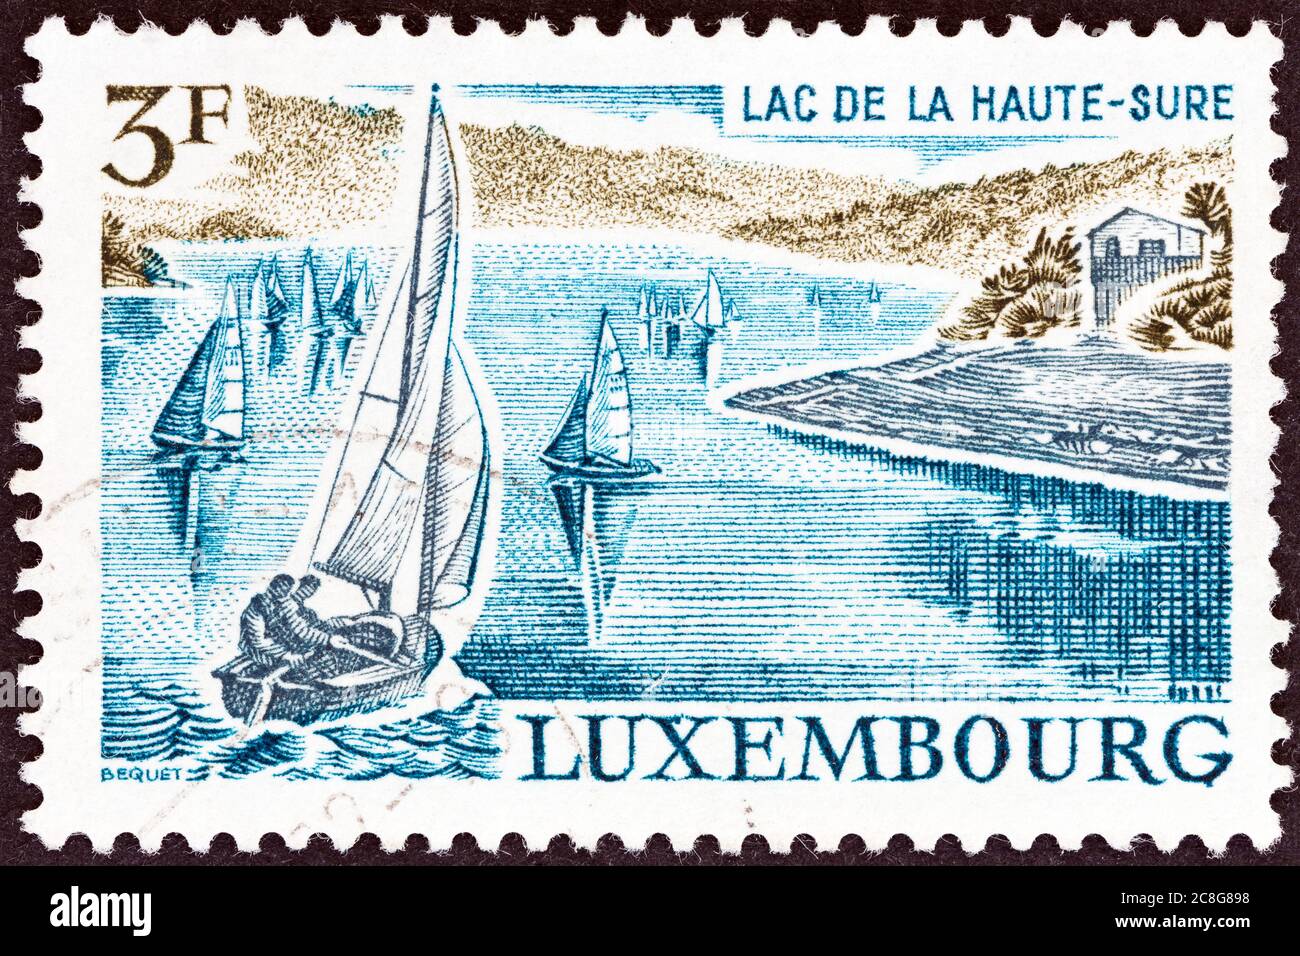 LUSSEMBURGO - CIRCA 1971: Un francobollo stampato in Lussemburgo dal numero 'luoghi ed edifici' mostra il lago artificiale, alta Valle Sure, circa 1971. Foto Stock